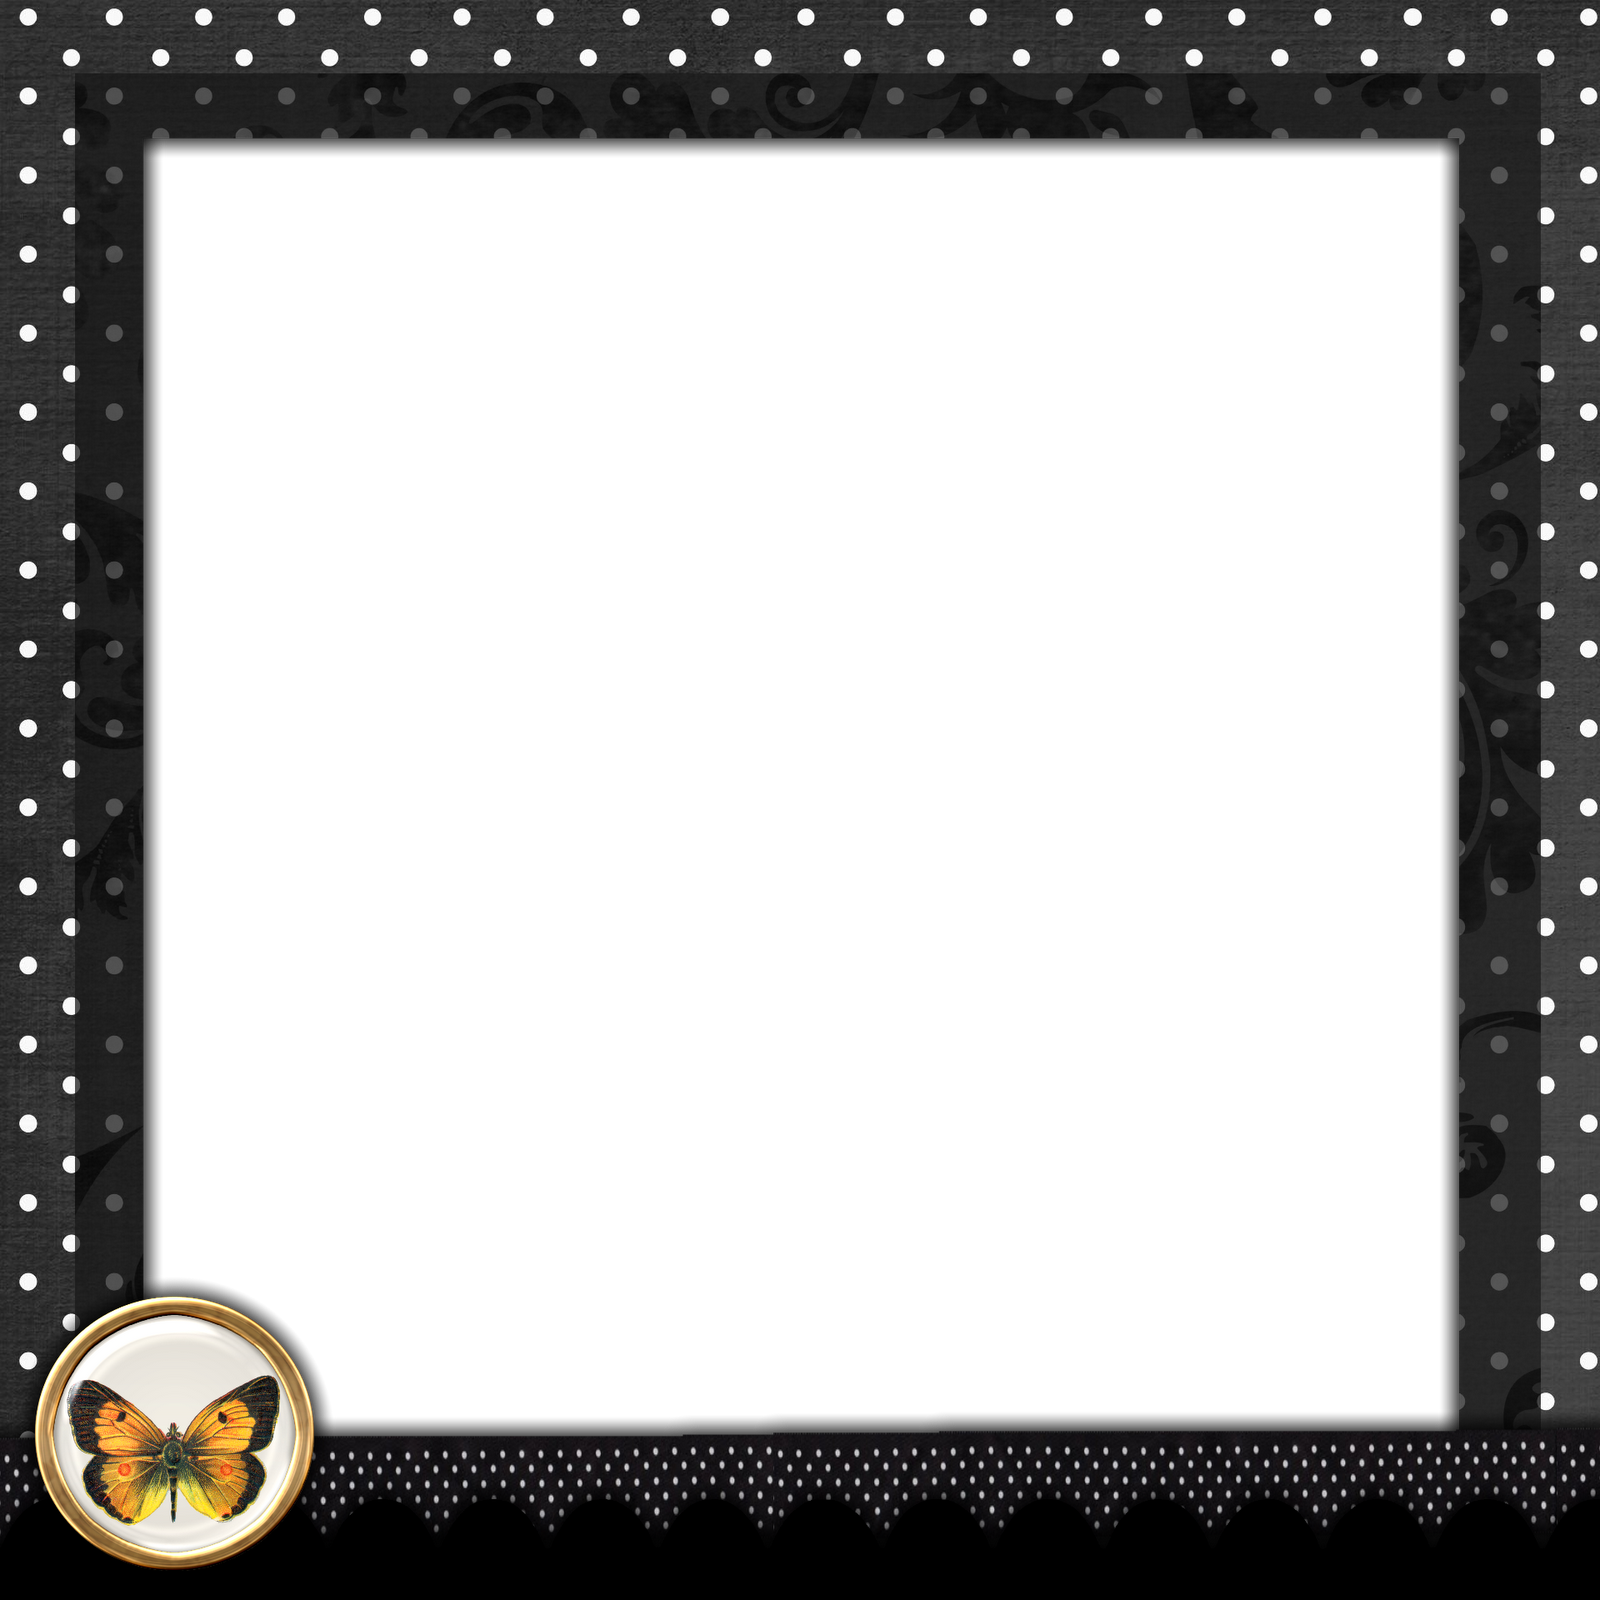 Black Polka Dot Border - Poke Dot Frame Transparent (1600x1600), Png Download